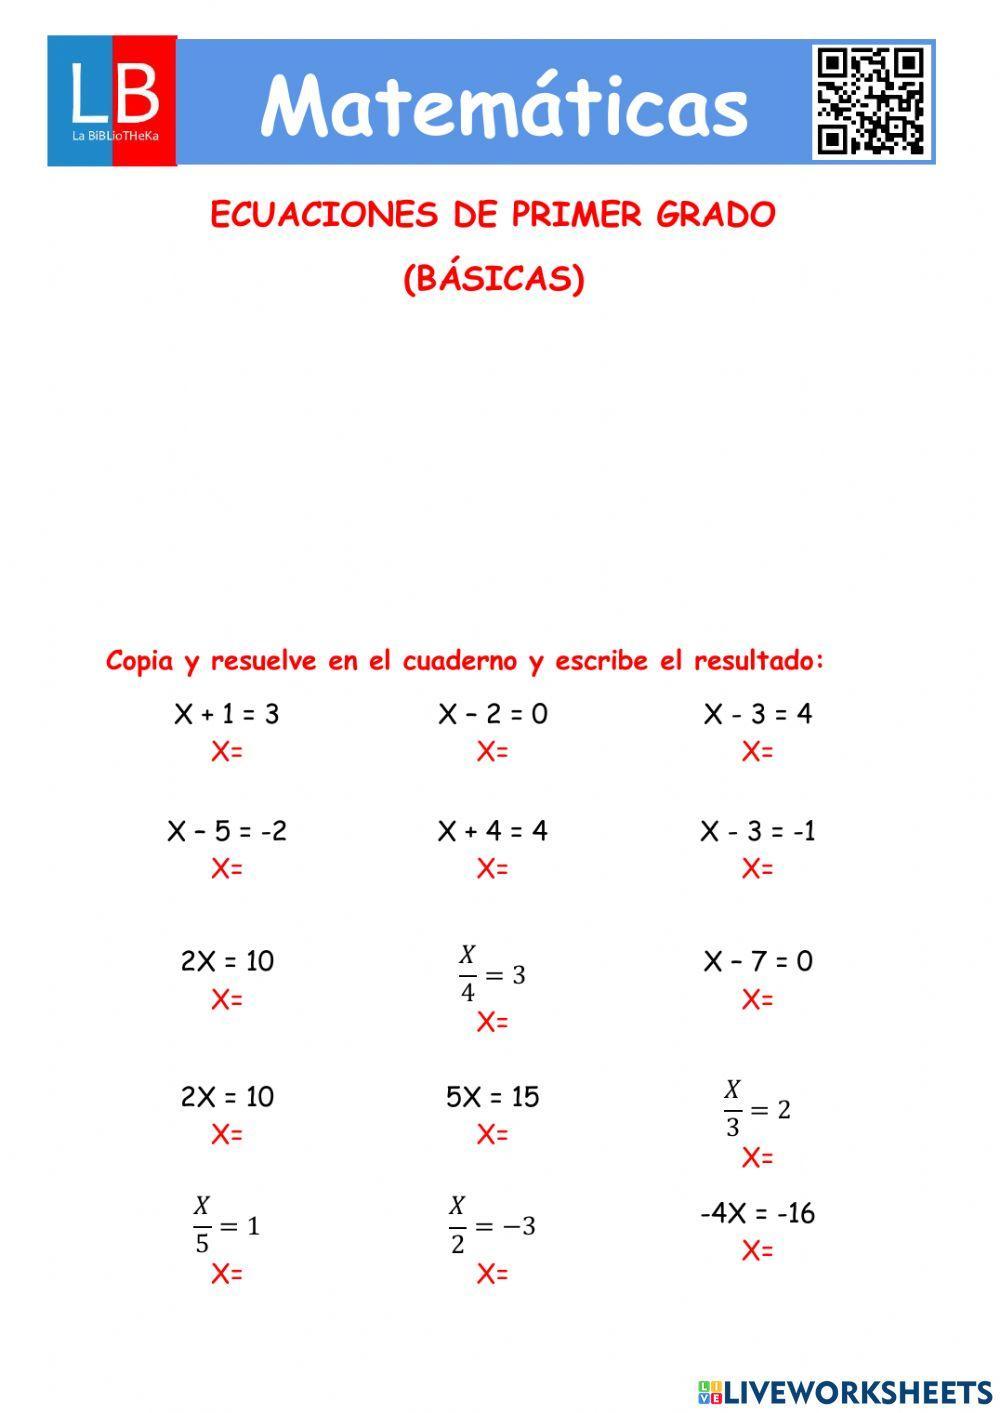 Ecuaciones de primer grado basicas